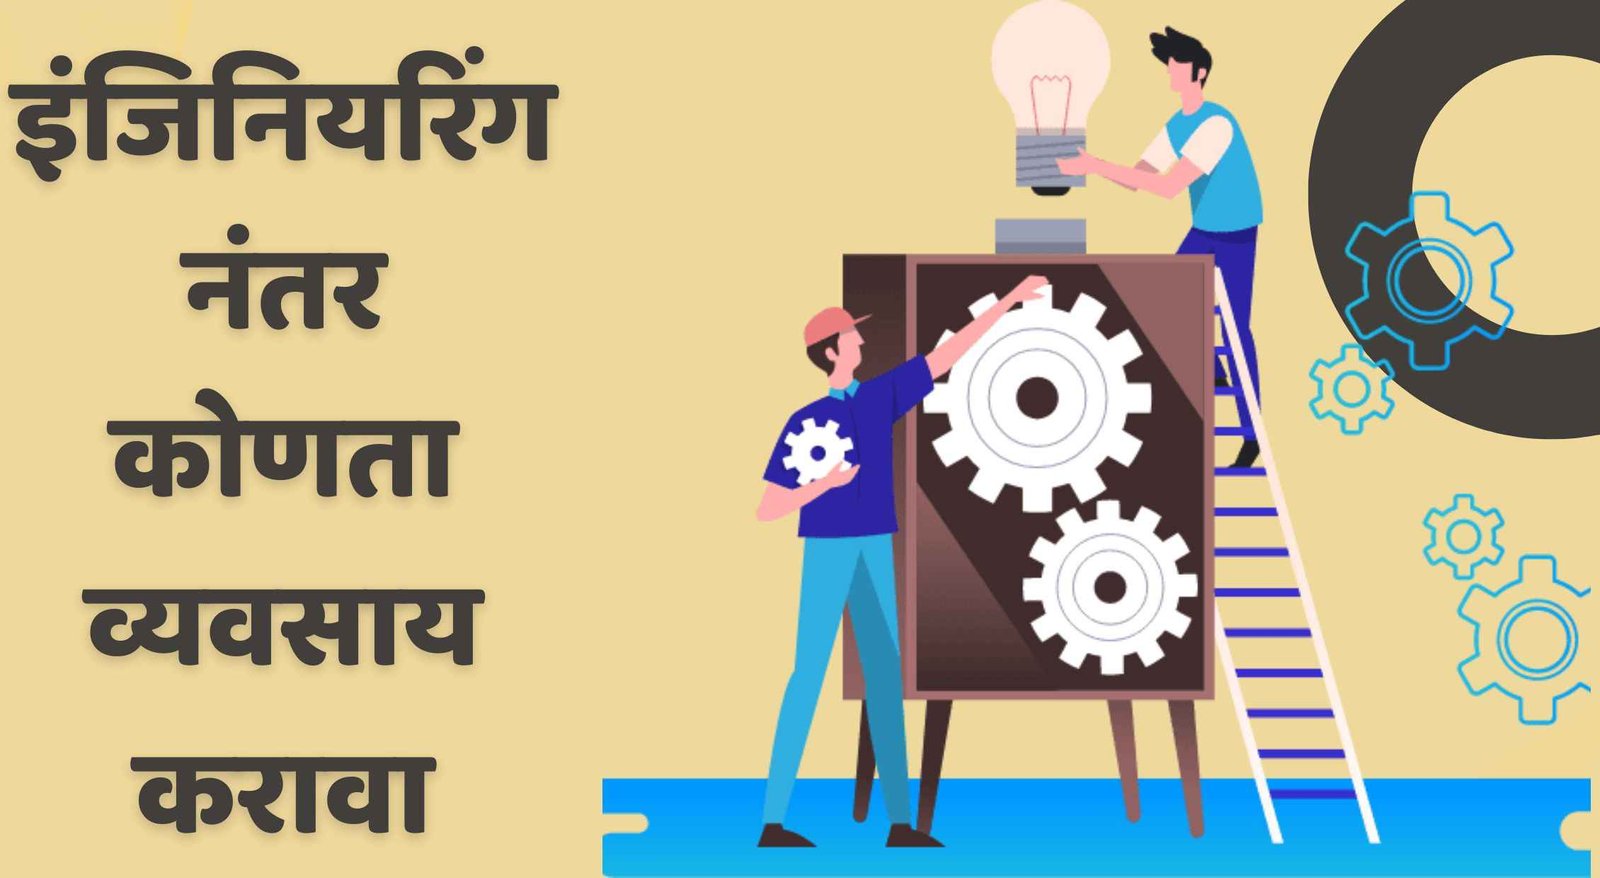 इंजिनियरिंग नंतर कोणता व्यवसाय करावा | After Engineering Business Ideas In Marathi